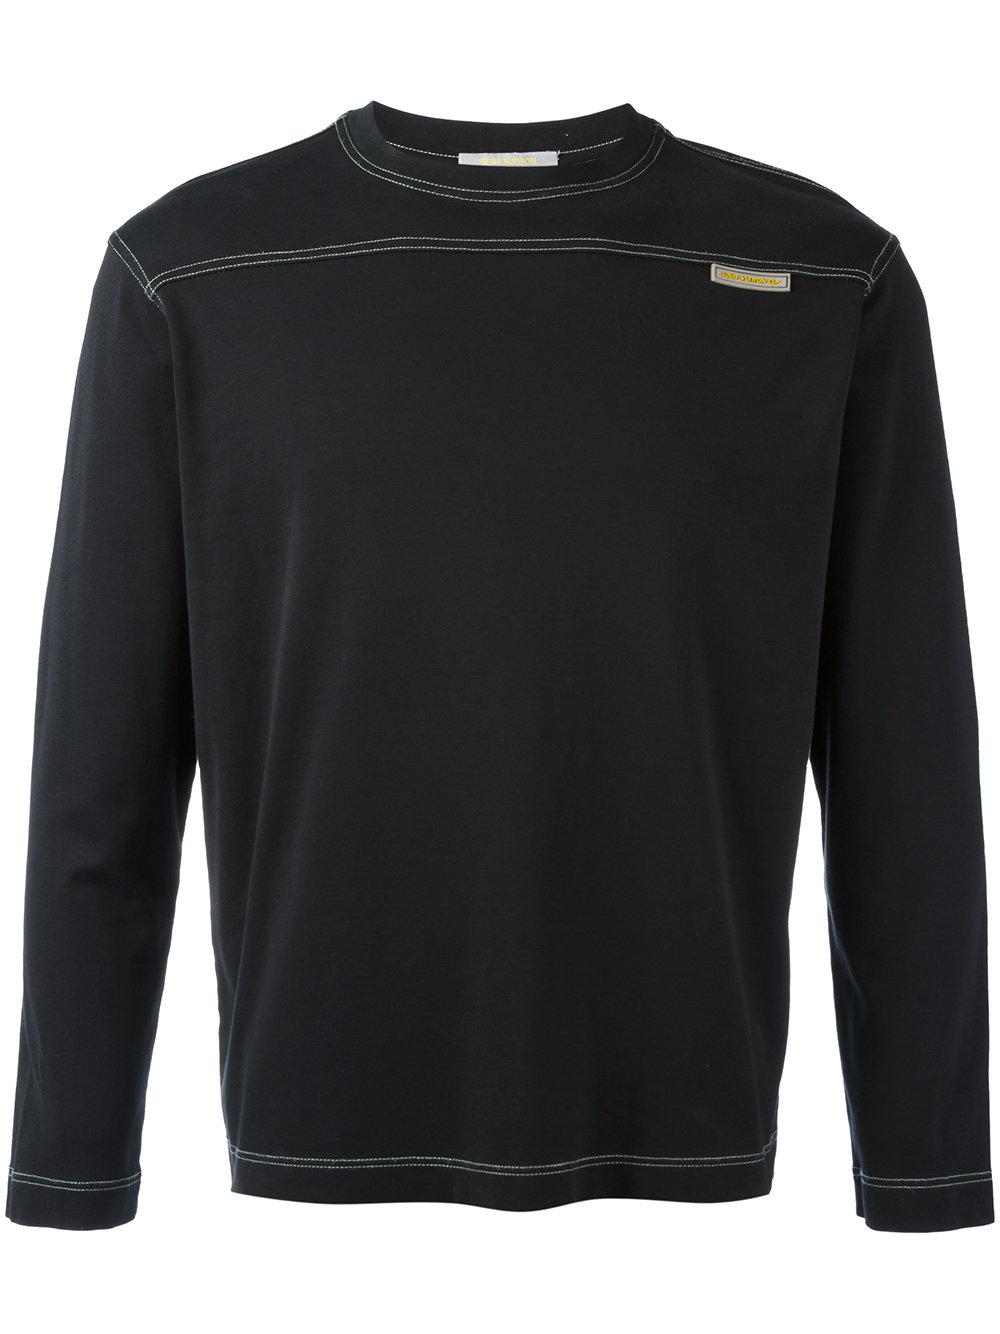 Lyst - Louis Vuitton Stitch Detail Sweatshirt in Black for Men